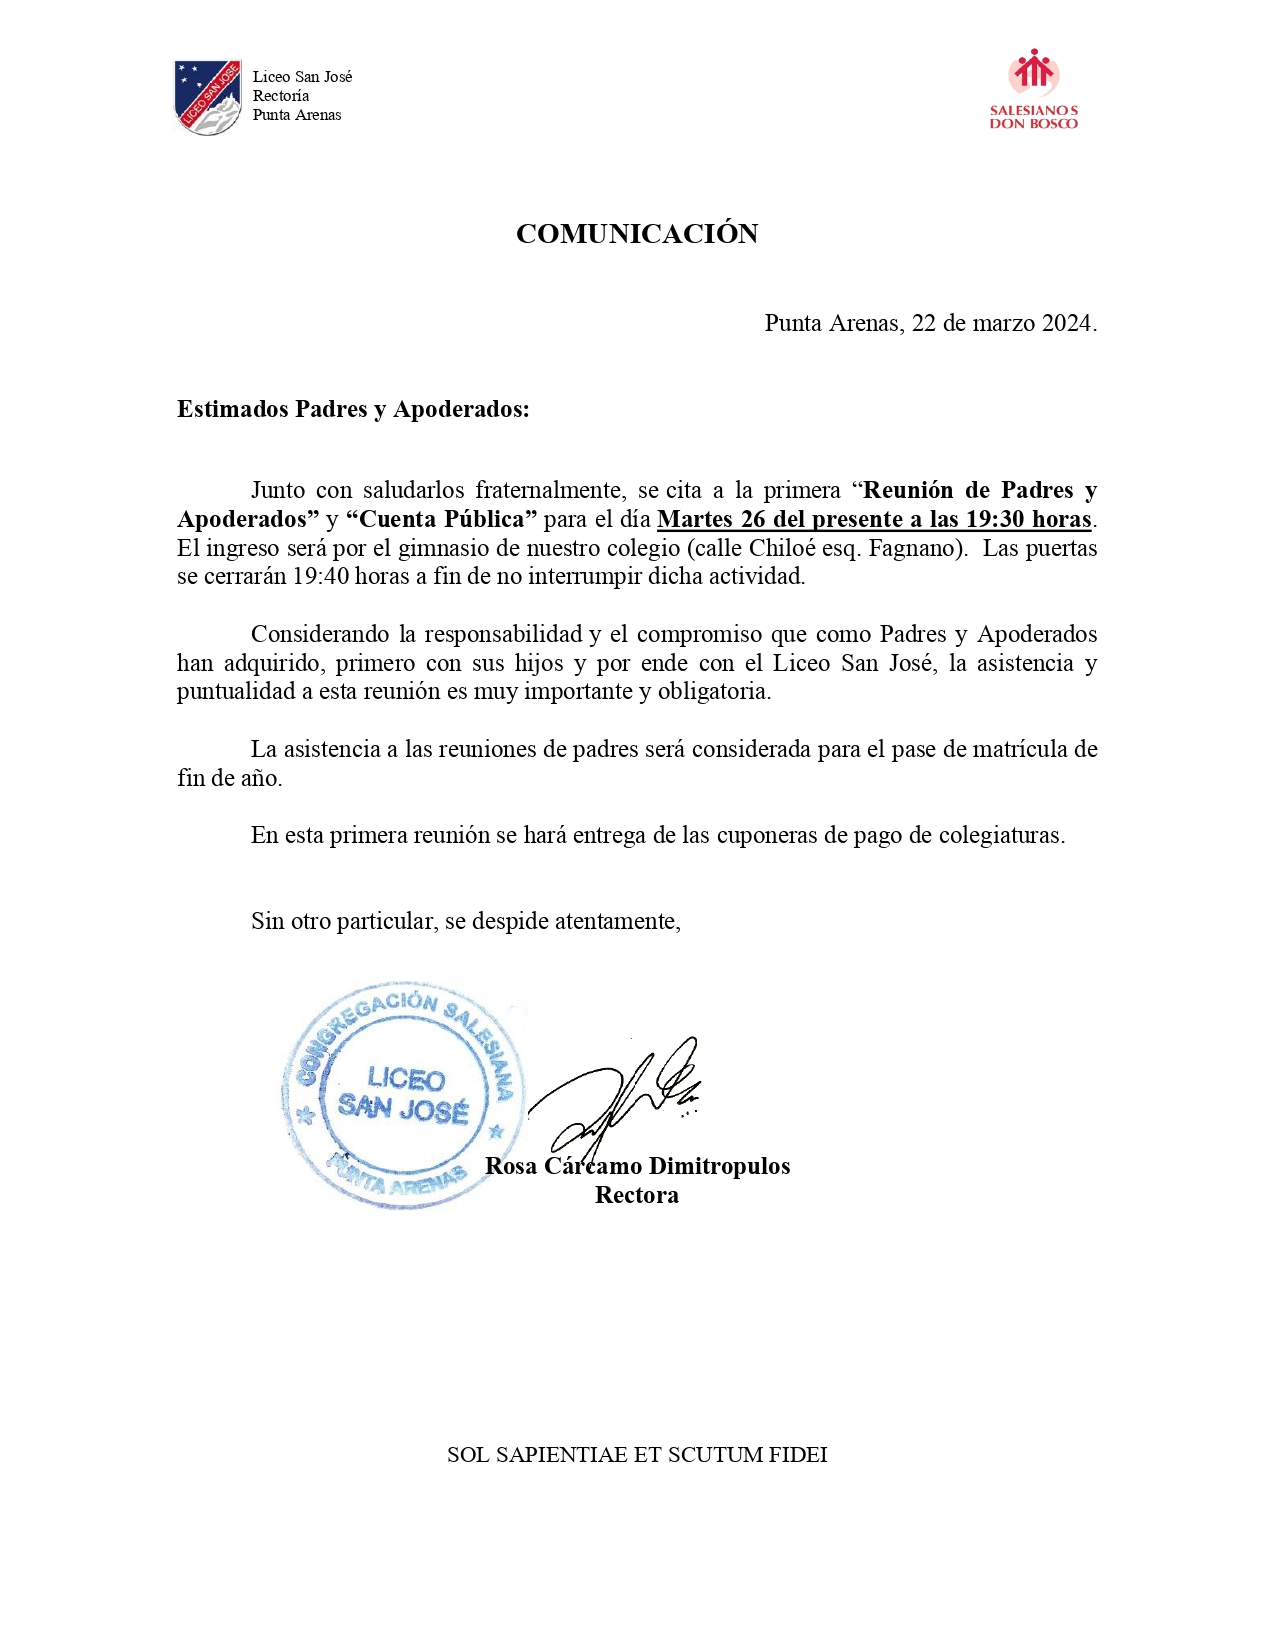 Comunicación Plenaria y Reunión PPAA Marzo 2024_page-0001.jpg